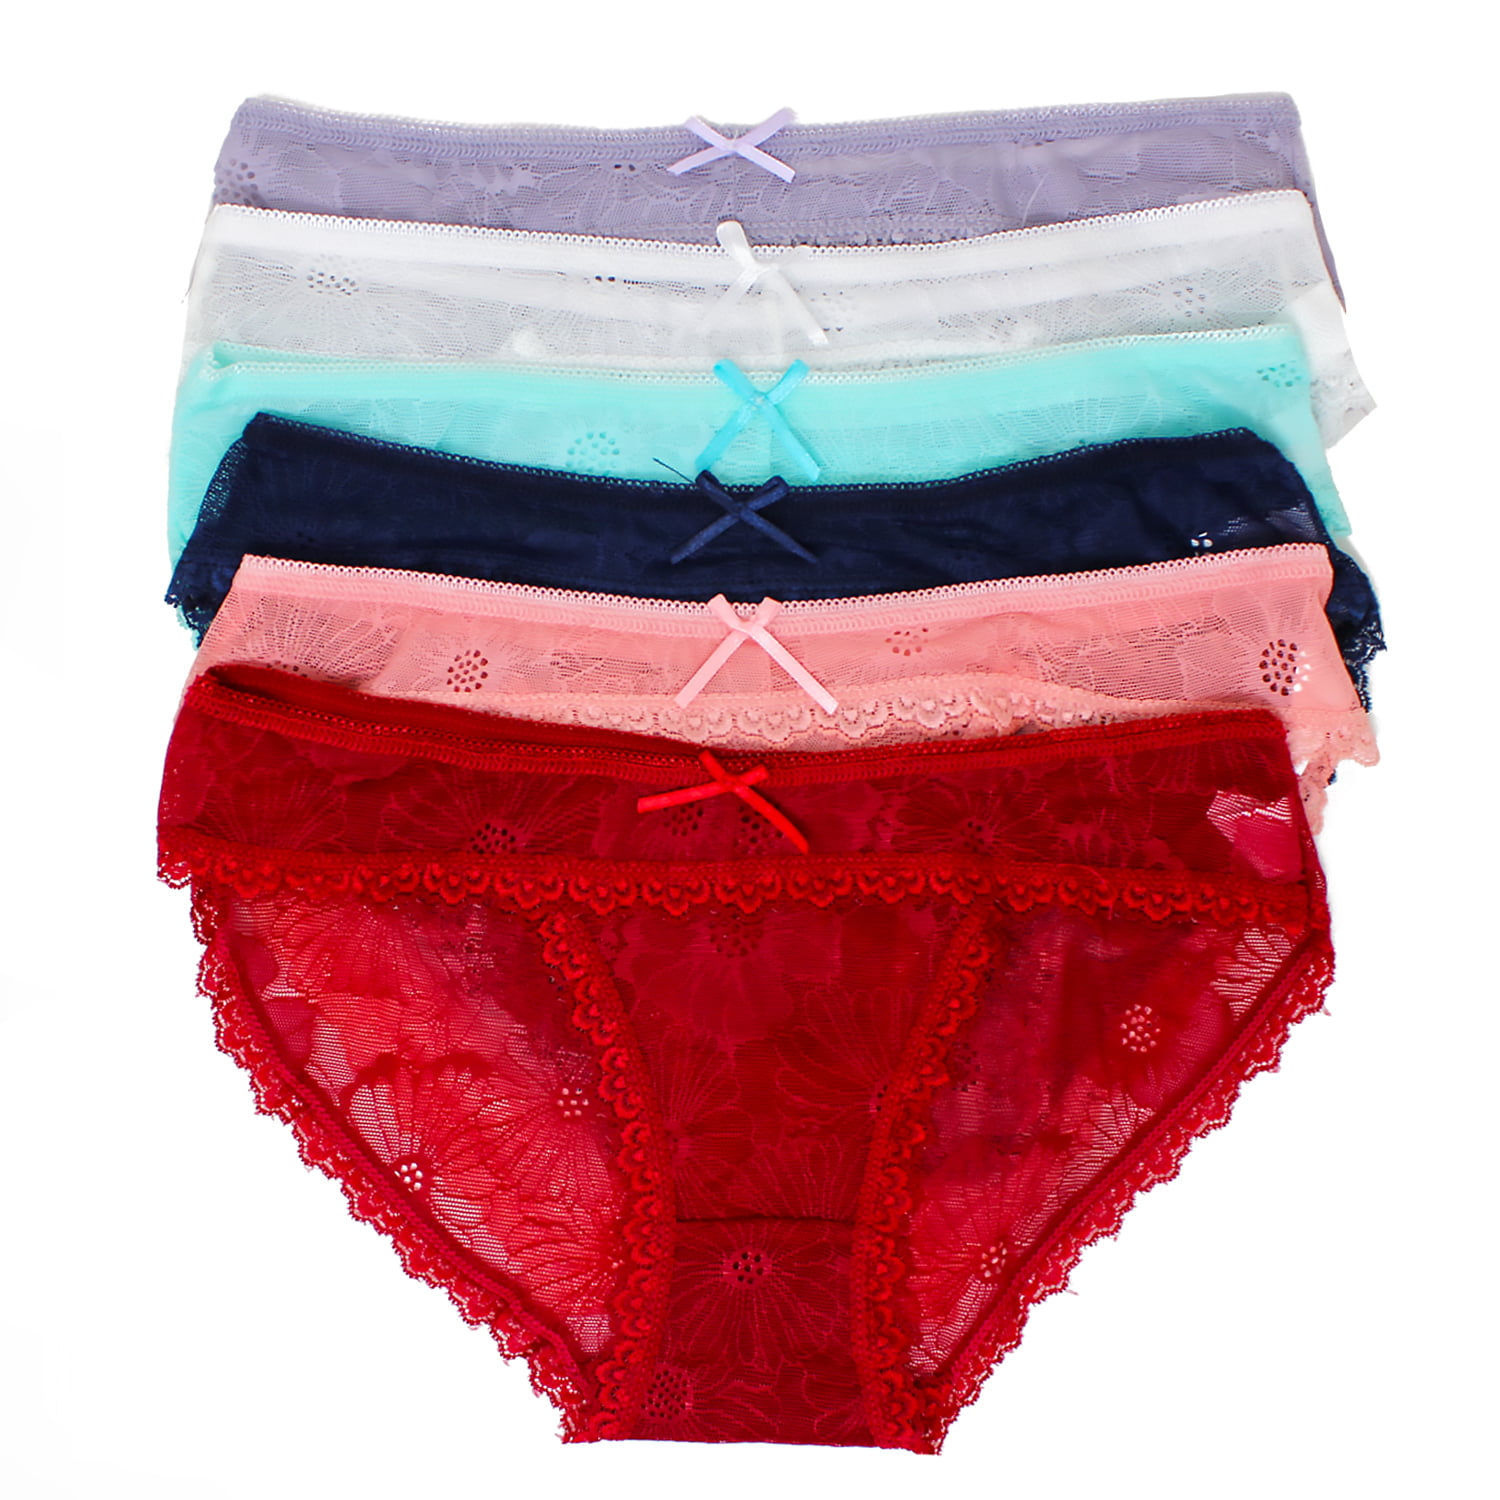 Rose - Rose 6 Pack of Women's Regular & Plus Size Lace Boyshort Panties ...